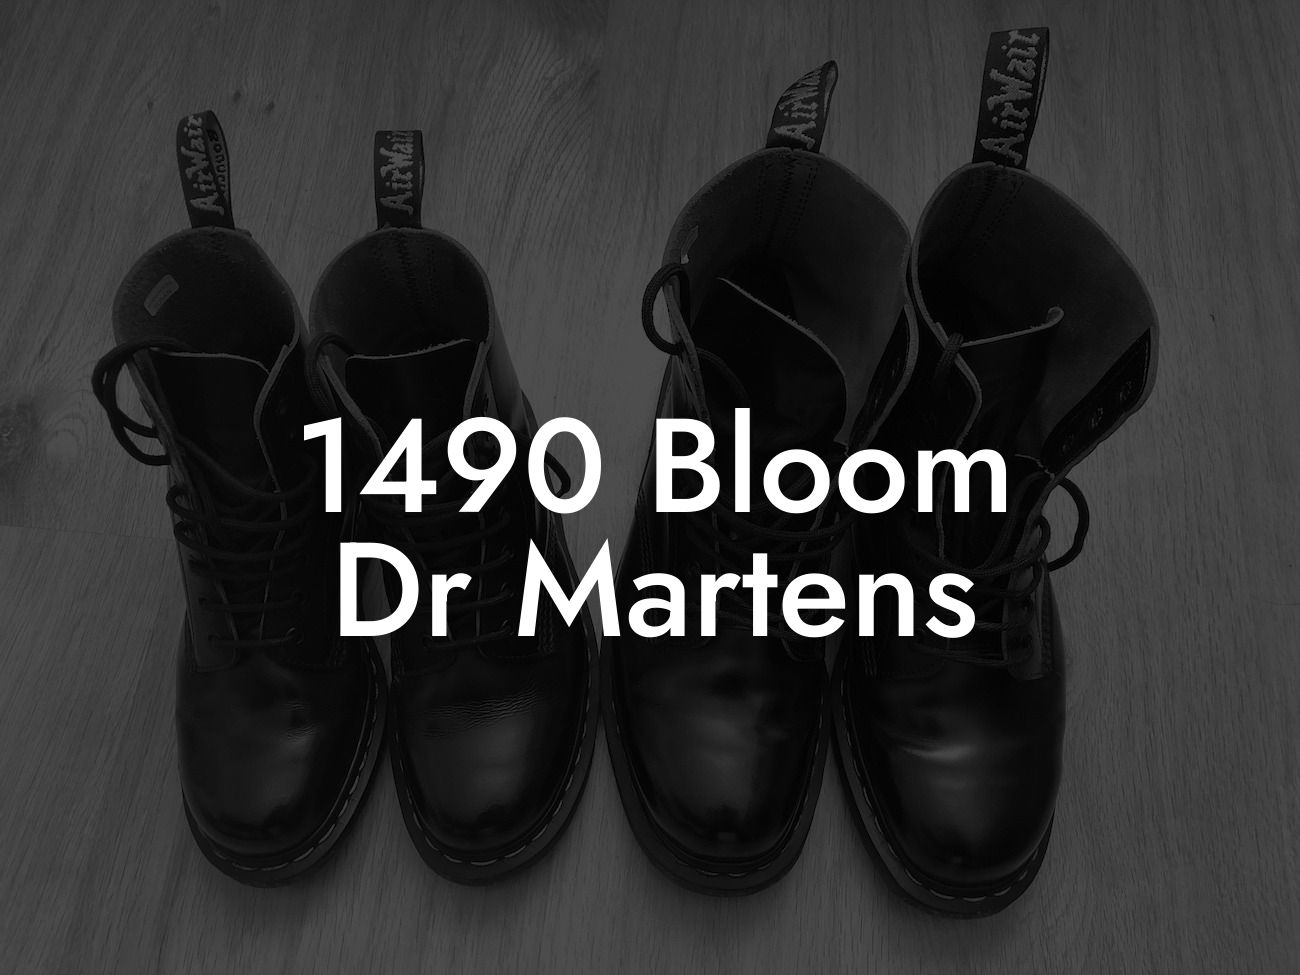 1490 Bloom Dr Martens